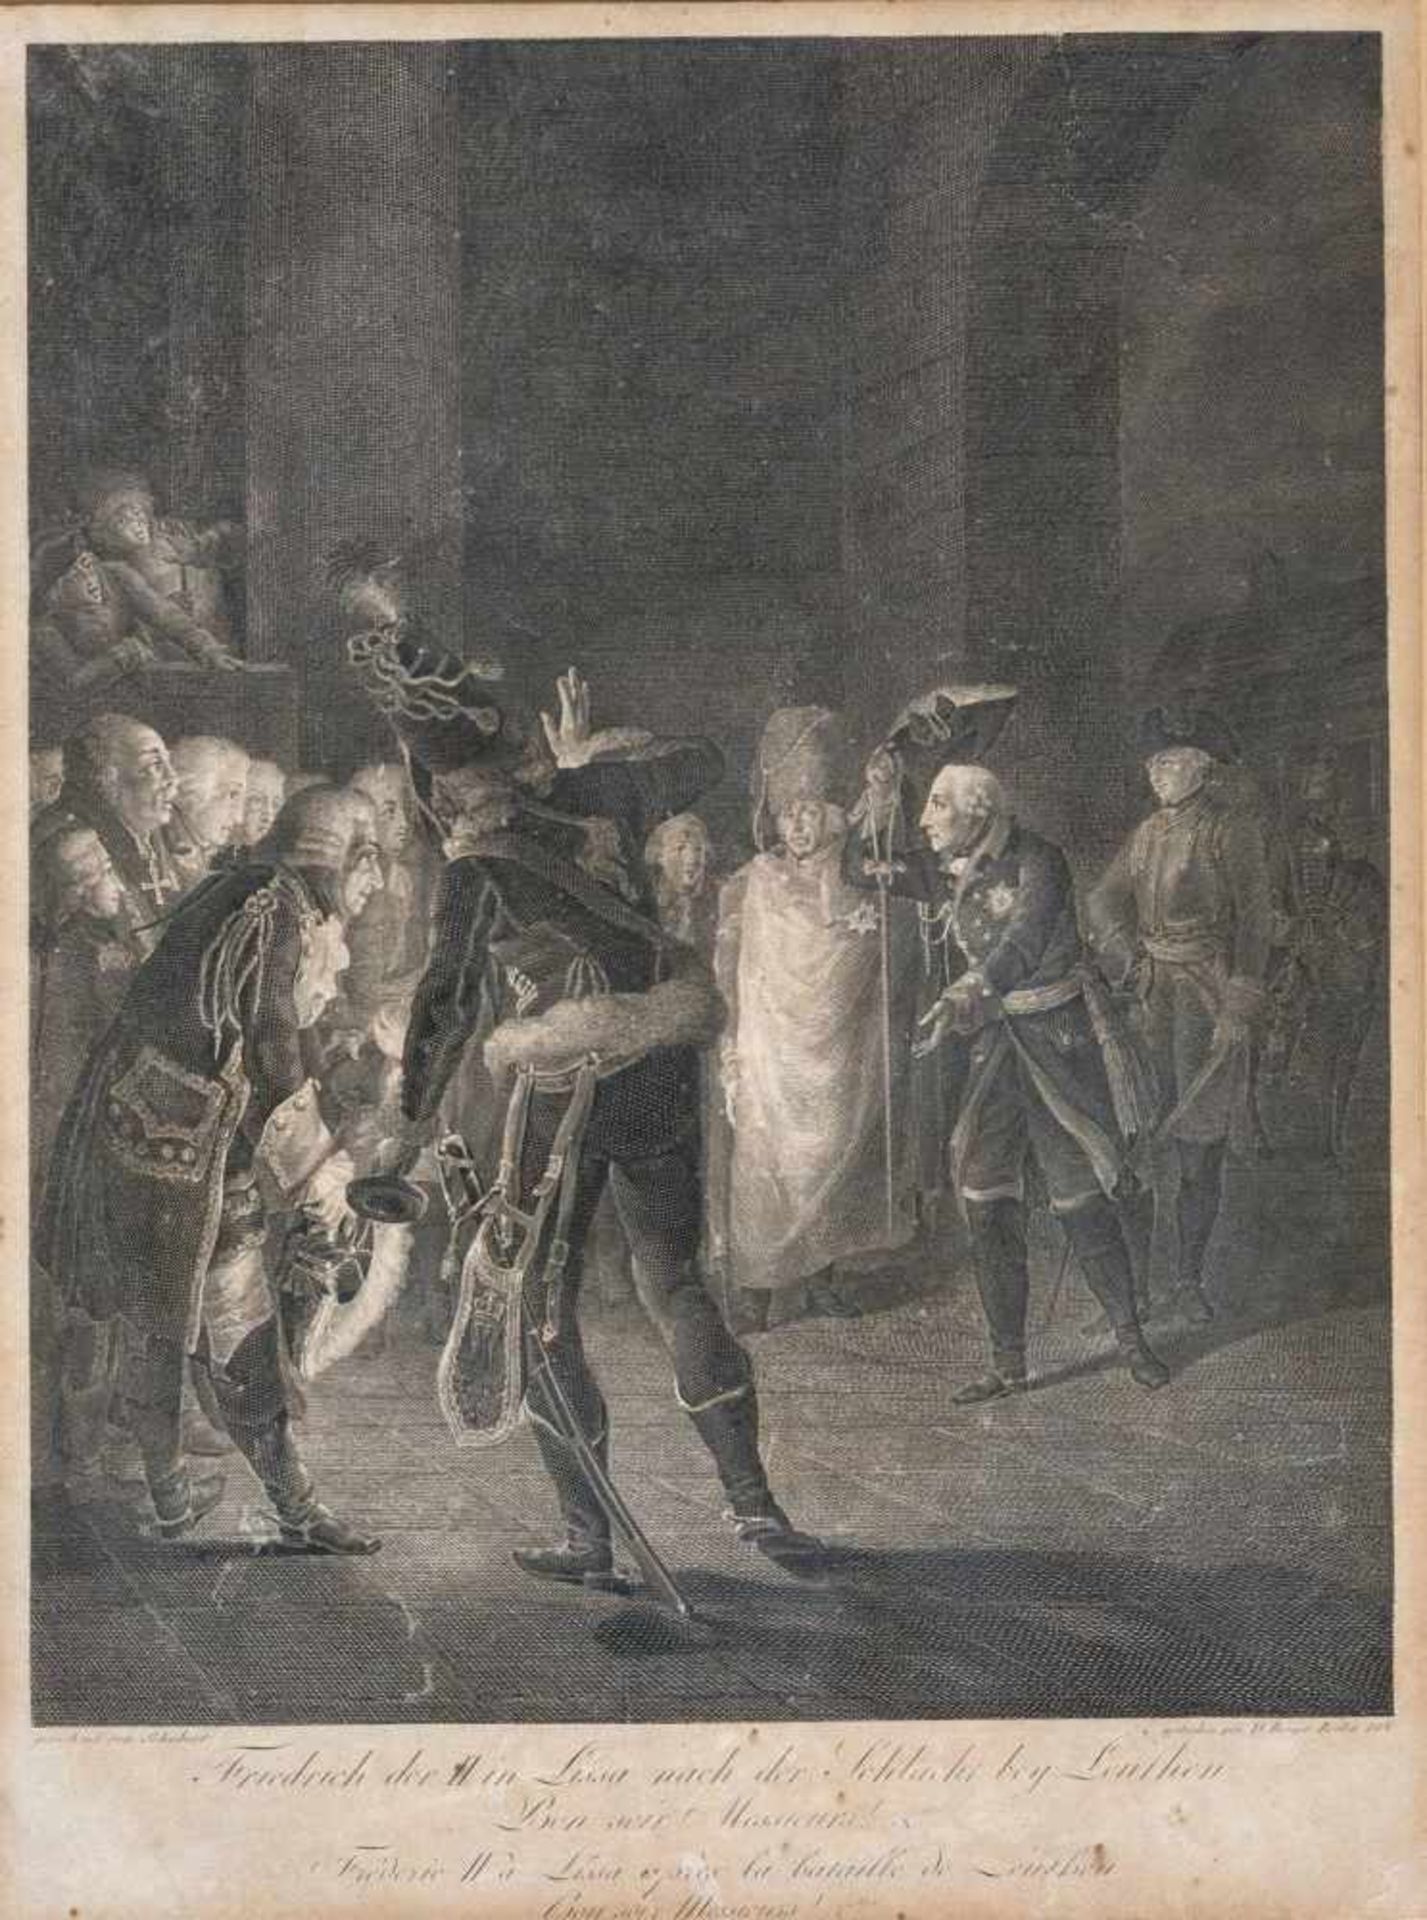 Berger, Daniel (Berlin 1744-1825)Friedrich der II. in Lissa nach der Schlacht bey Leuthen1801"Bon